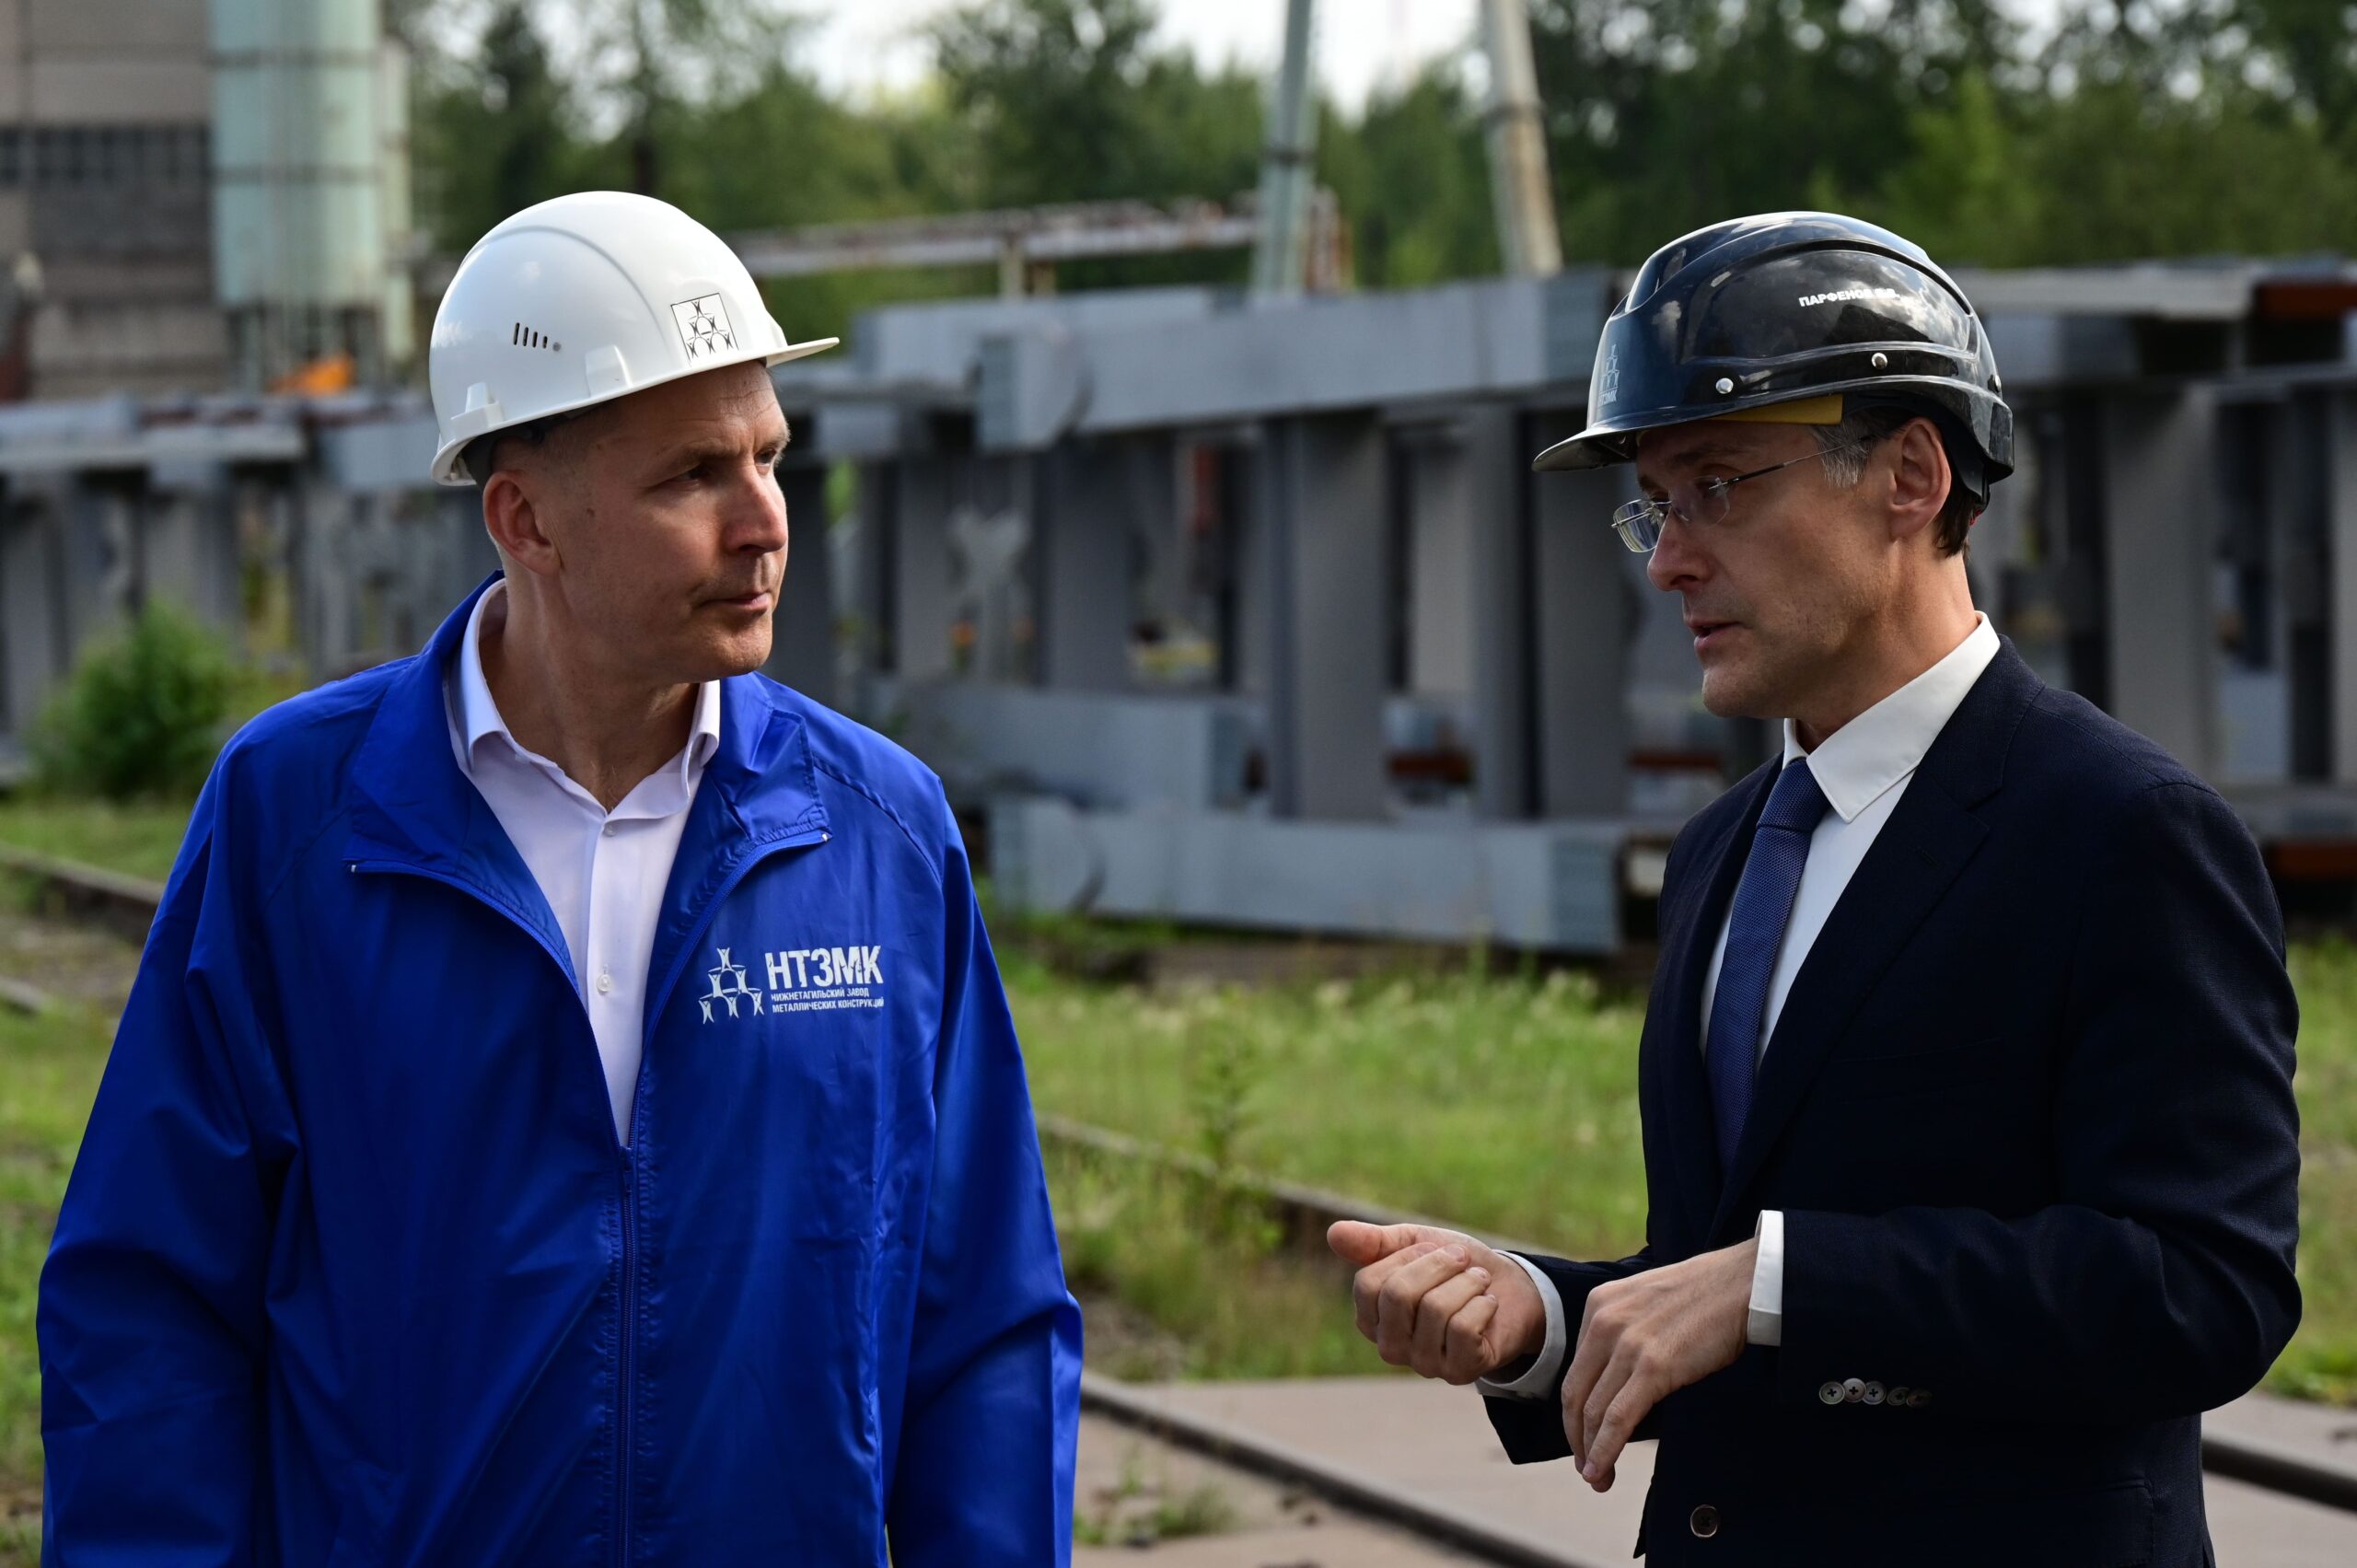 Строительство нового завода стоит 122 млн рублей